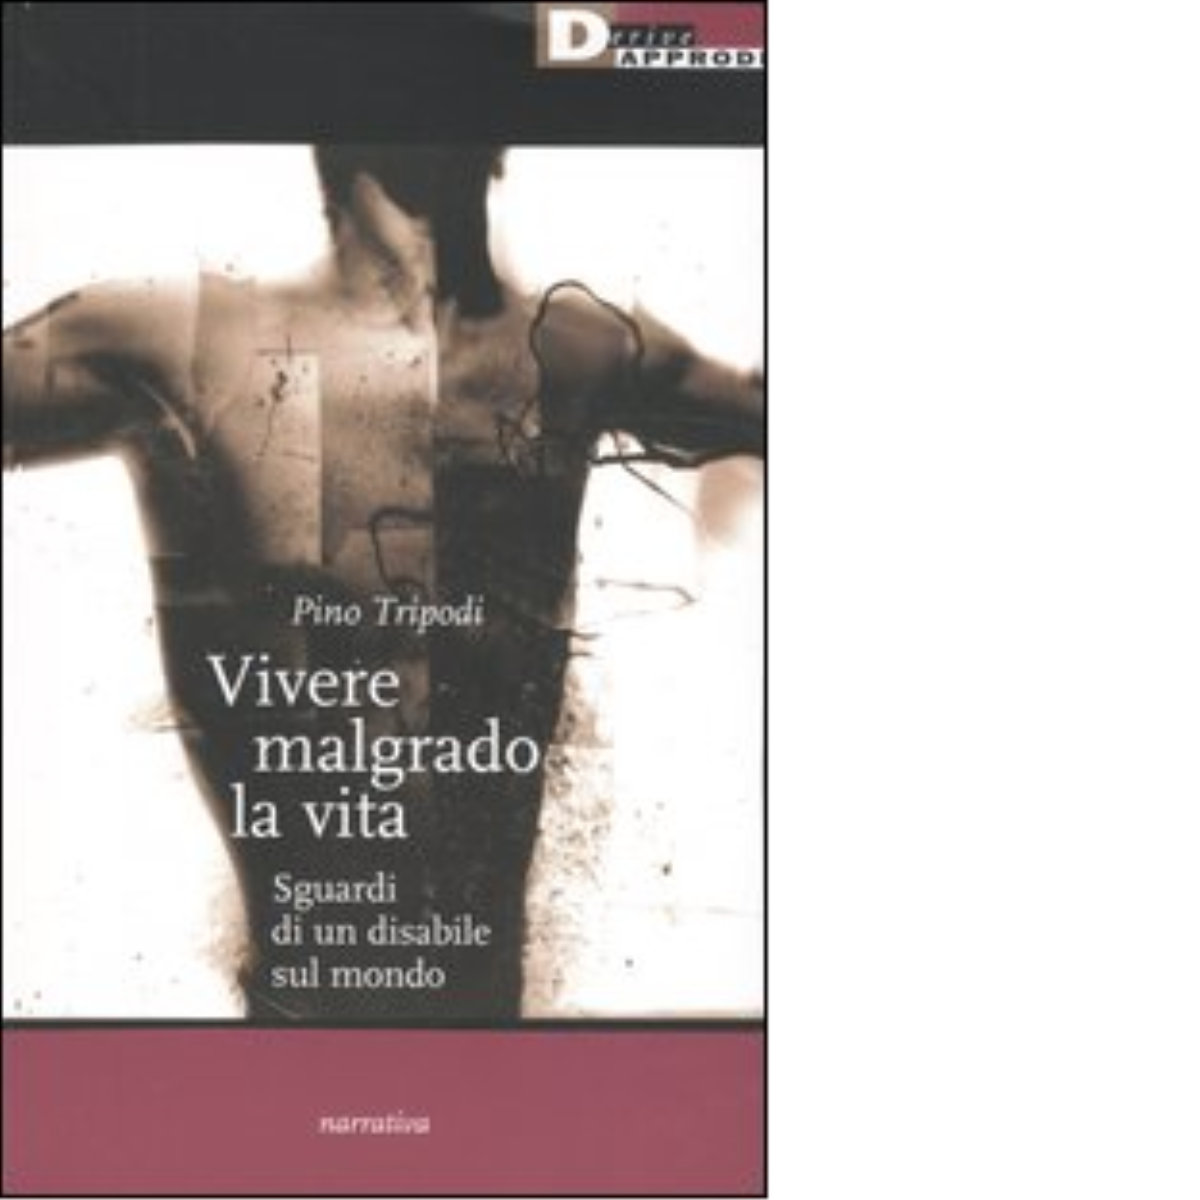 VIVERE MALGRADO LA VITA. di PINO TRIPODI - DeriveApprodi editore, 2004